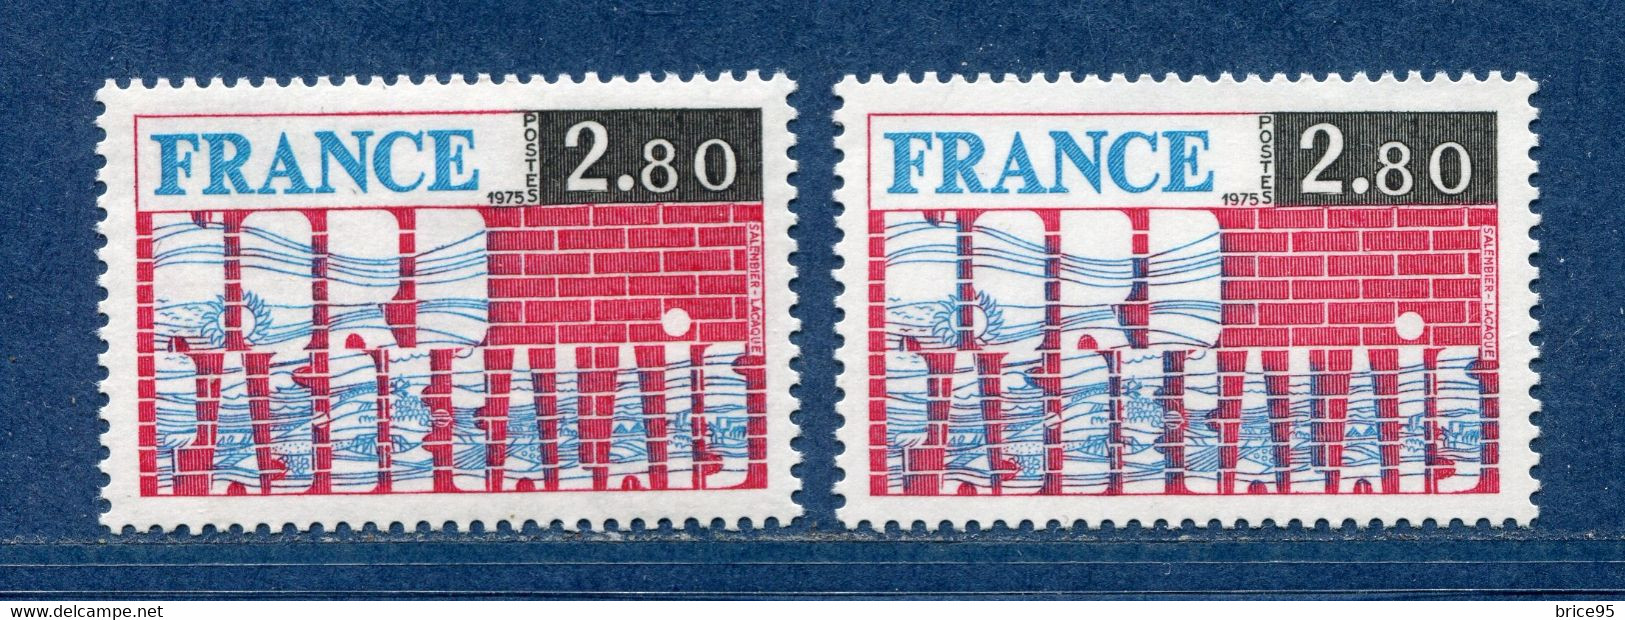 ⭐ France - Variété - YT N° 1852 - Couleurs - Pétouille - Neuf Sans Charnière - 1975 ⭐ - Ungebraucht